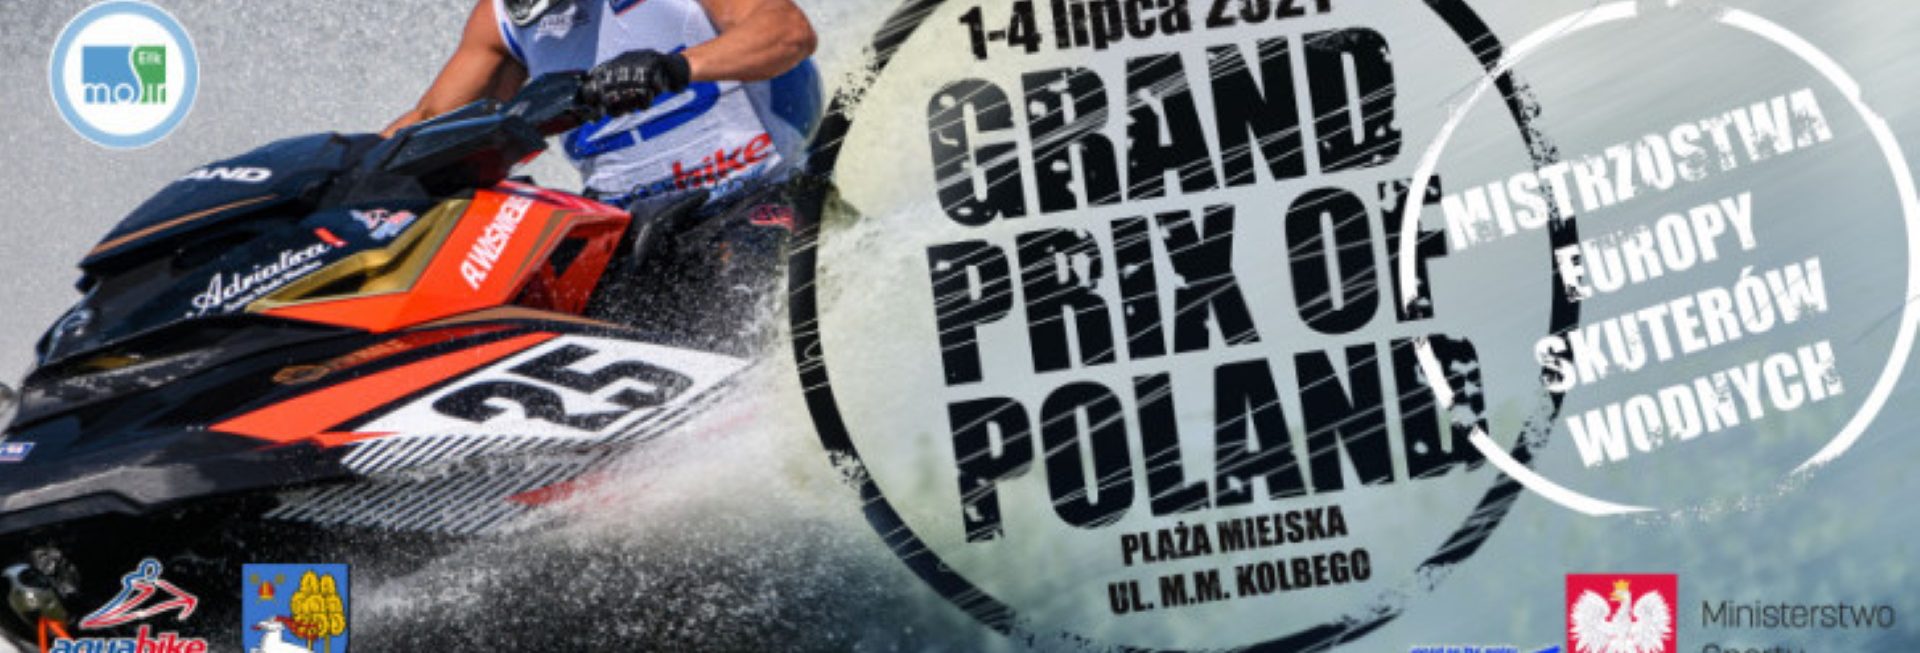 Plakat zapraszający do Ełku na Mistrzostwa Europy Skuterów Wodnych - Ełk 2021. Na plakacie zdjęcie zawodnika na skuterze wodnym podczas zawodów. 